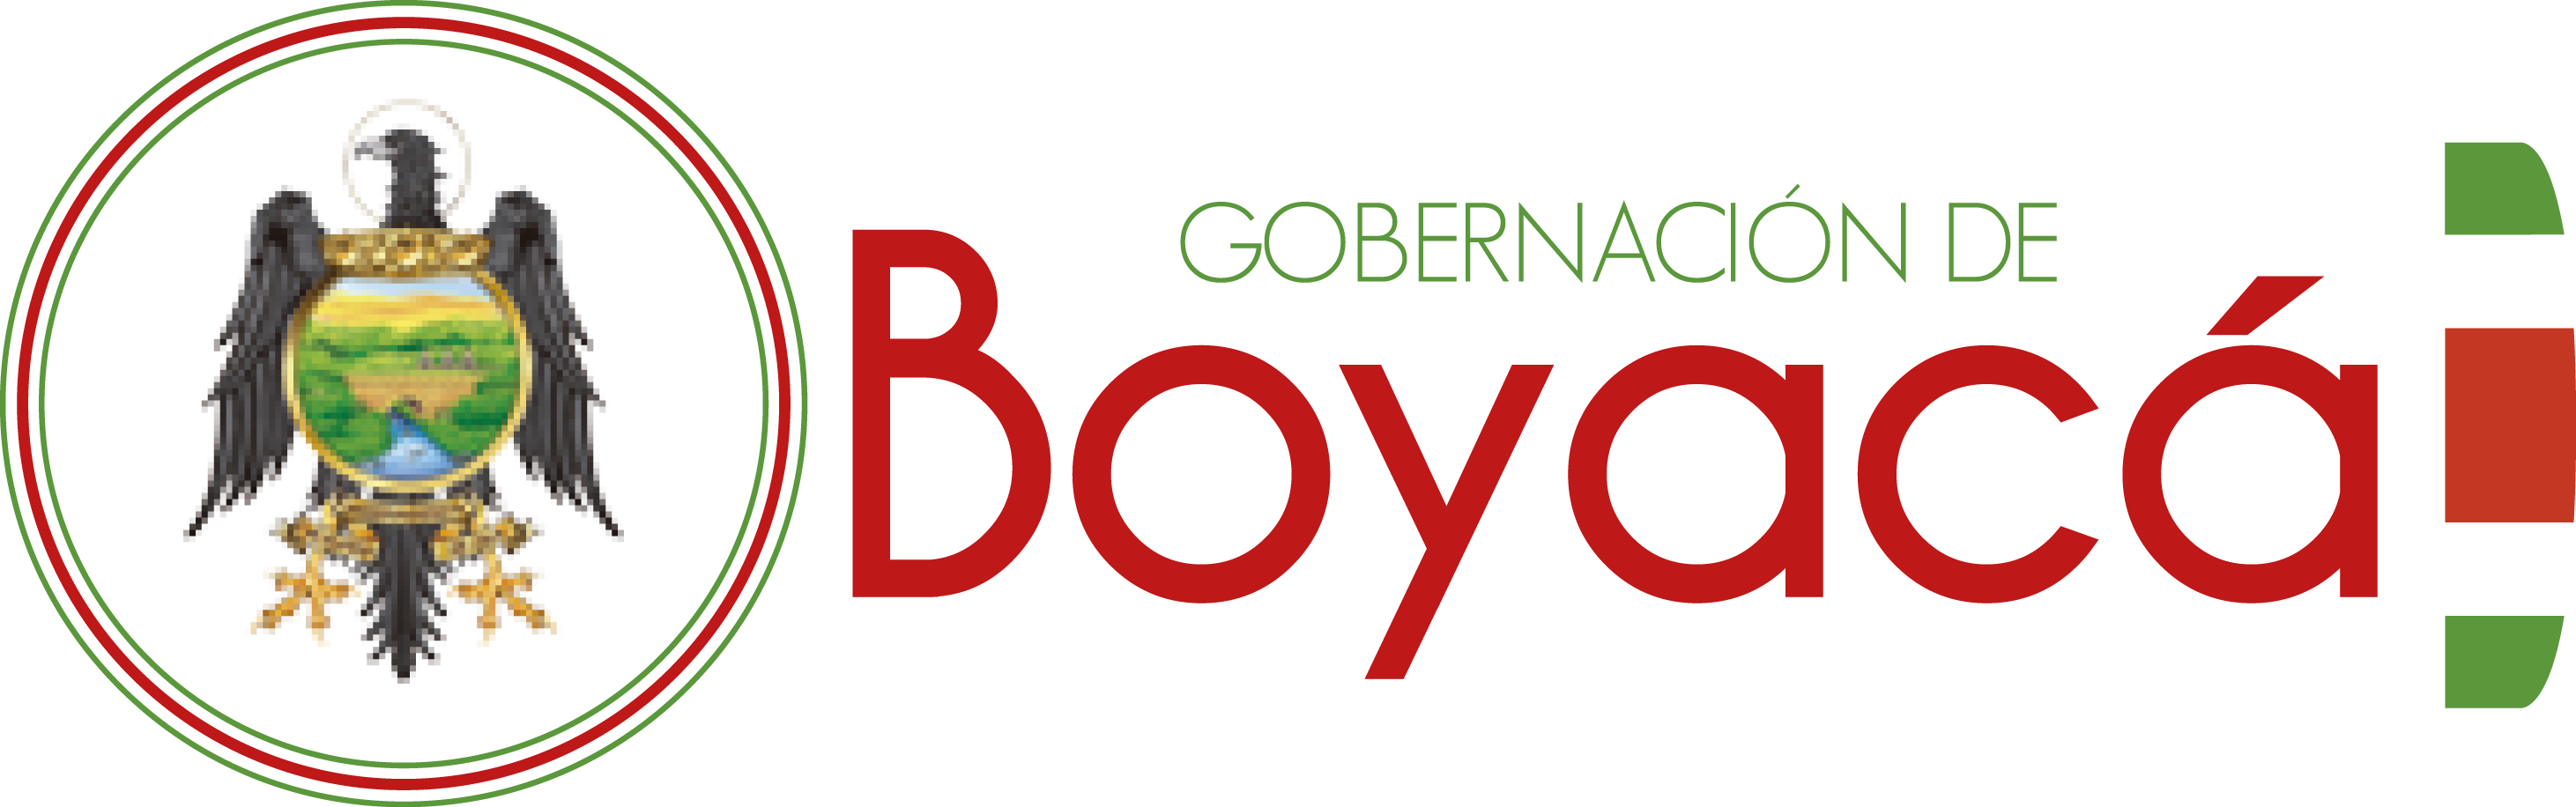 Gobernacion-de-Boyacá